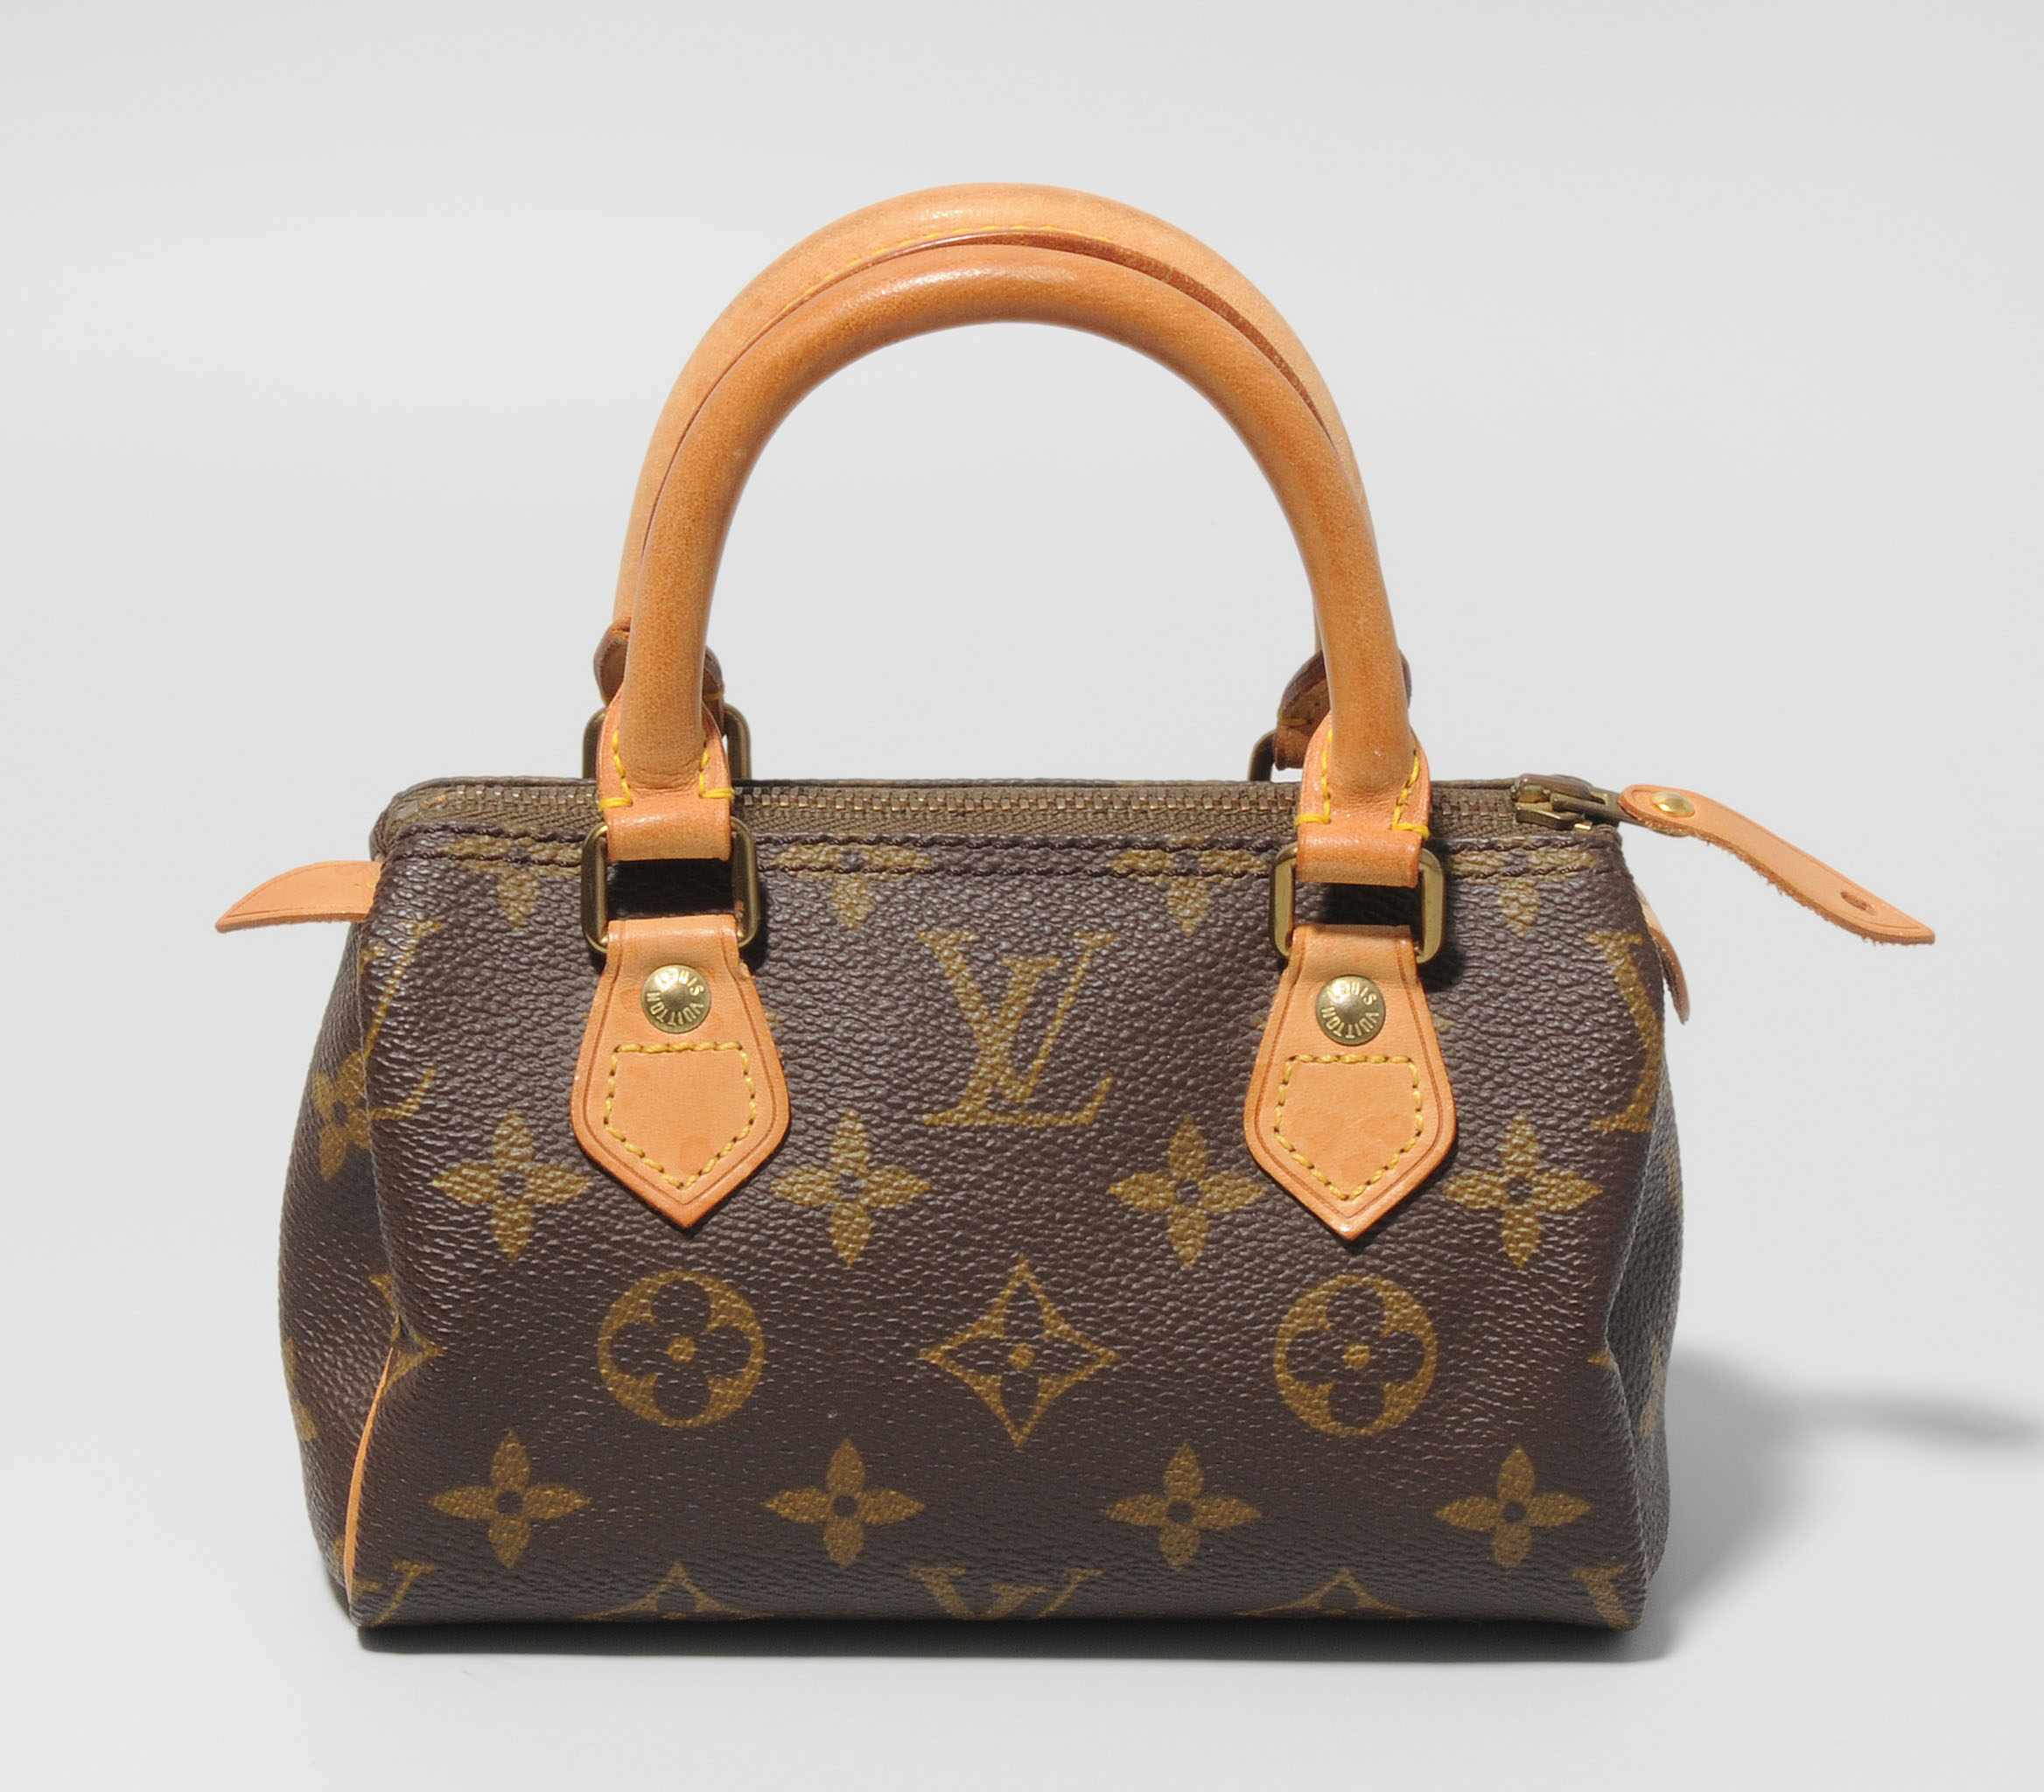 Louis Vuitton, Handtasche "Speedy Mini" Aus Monogram Canvas. Zwei Traggriffe. Reissverschluss.